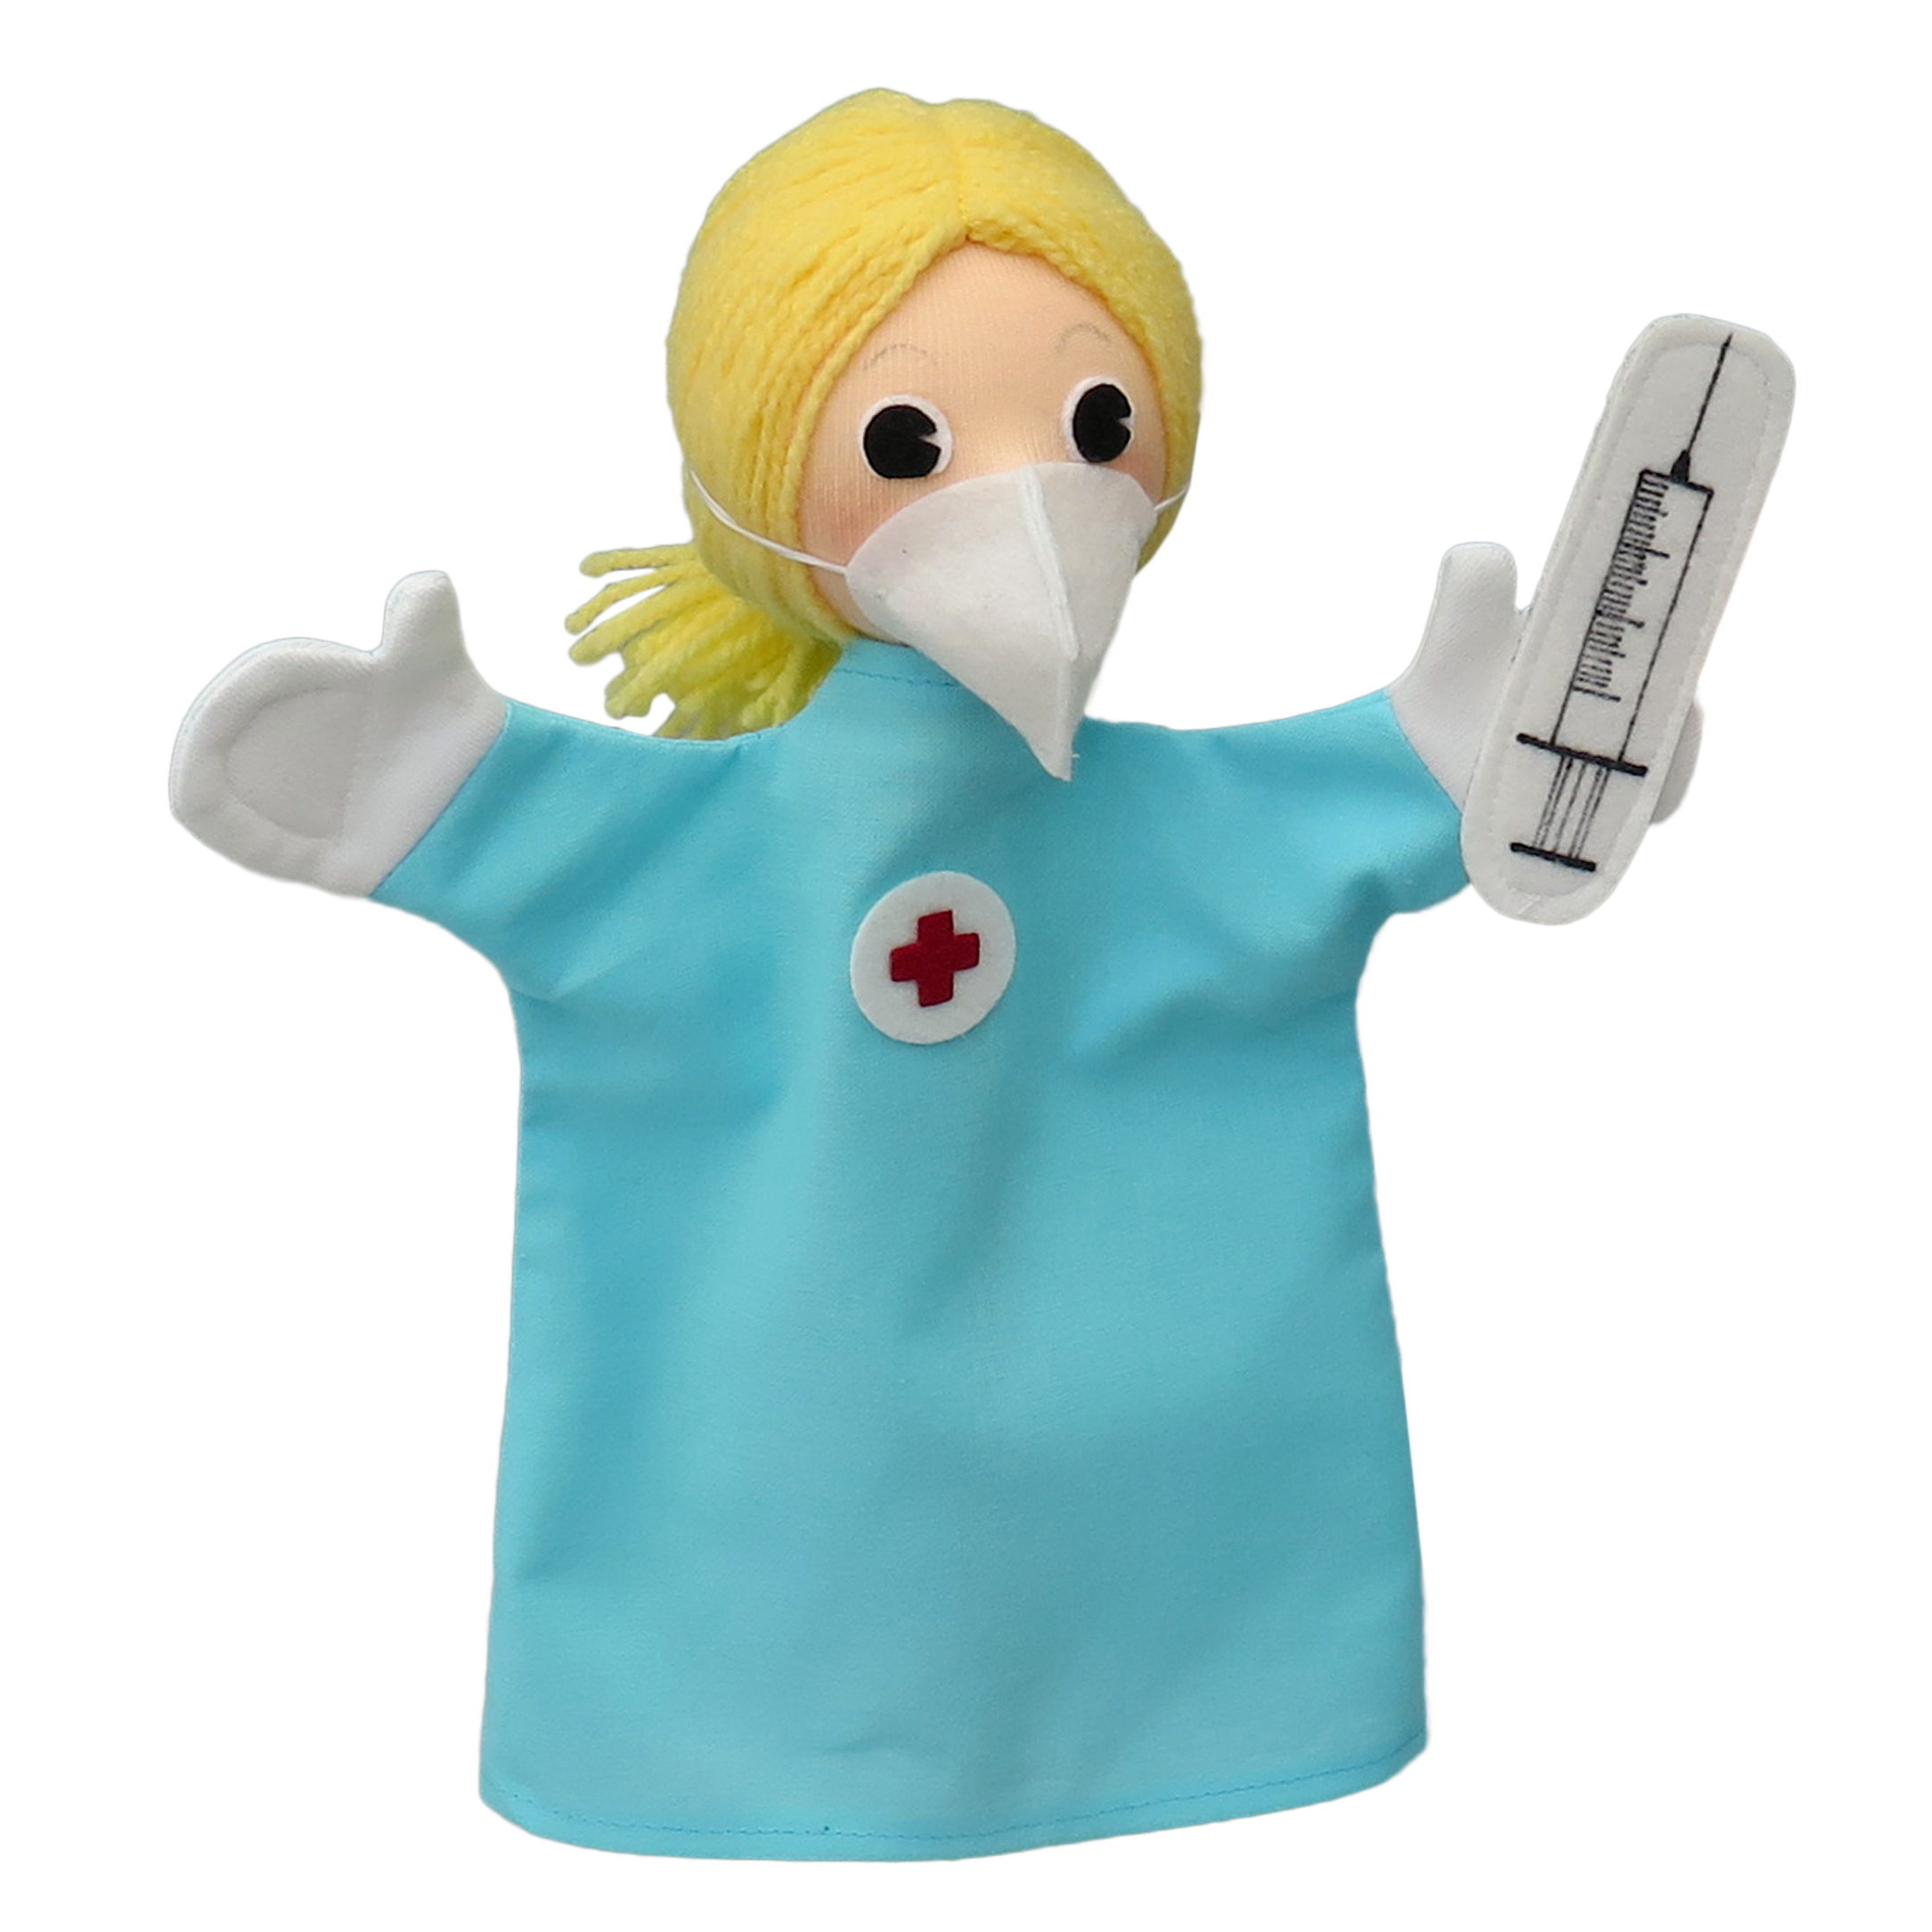 Hand puppet nurse - Czech handicraft